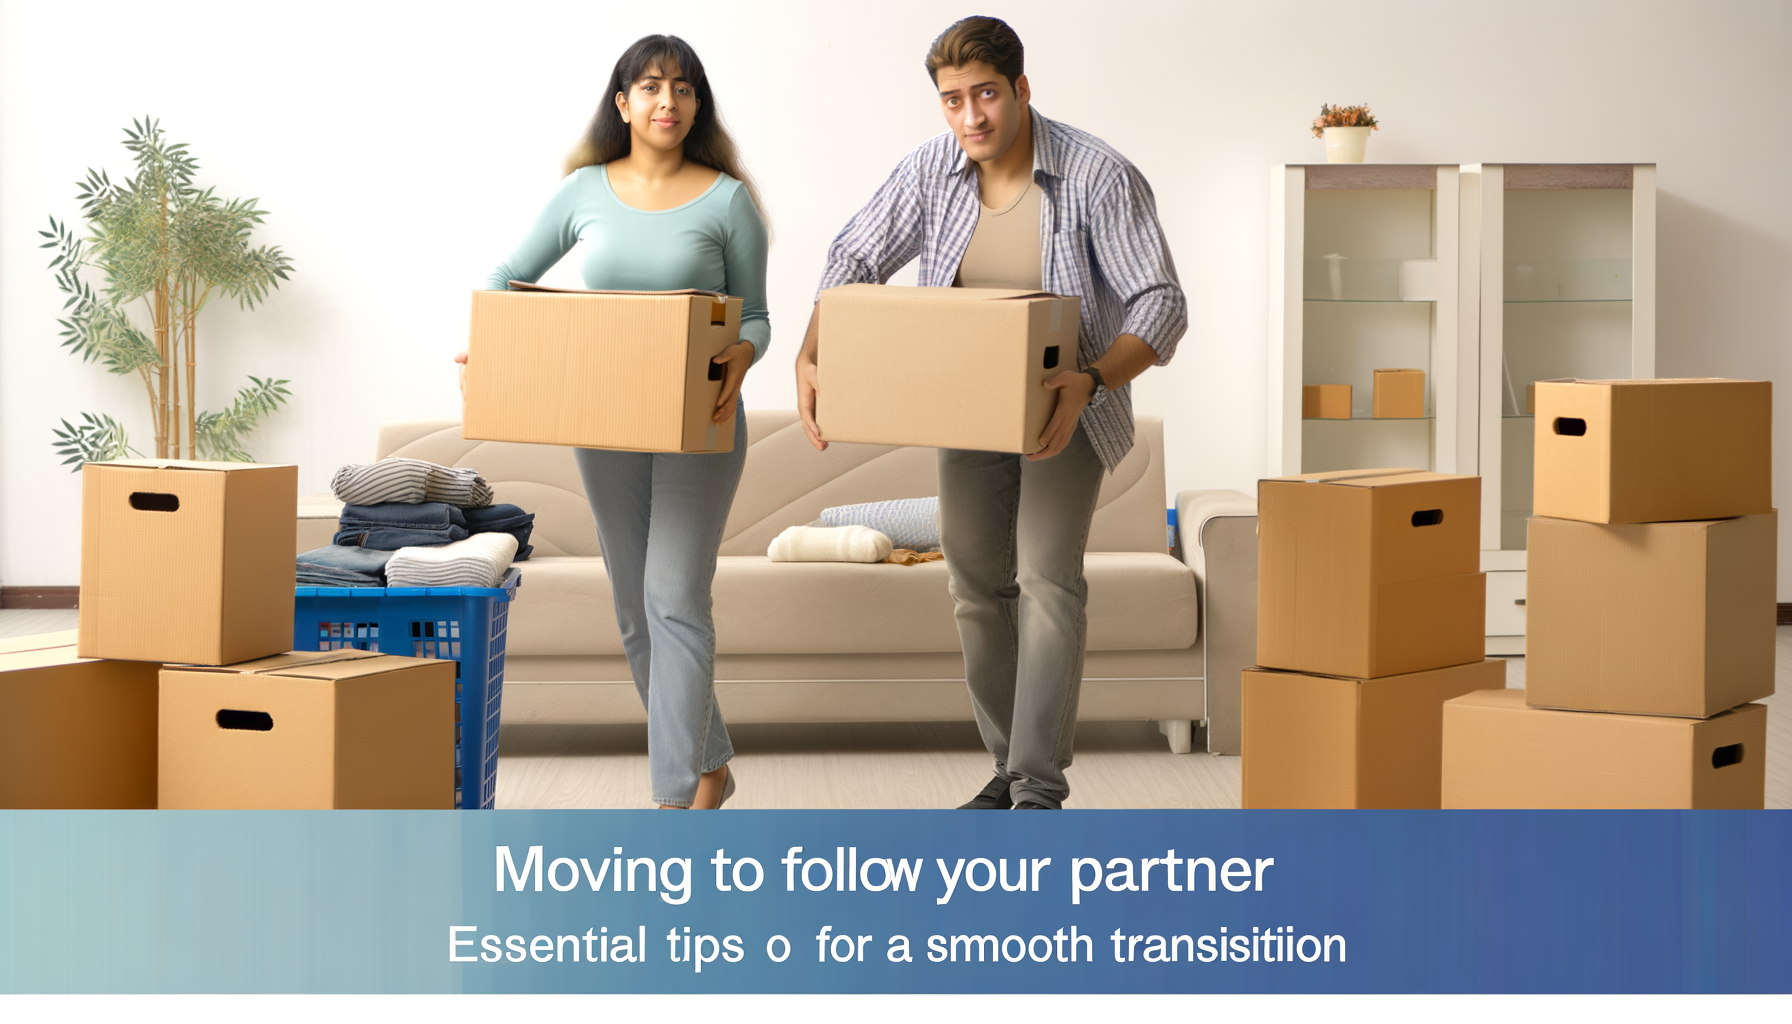 "Image d'un couple heureux emballant des cartons pour déménager et suivre une opportunité de carrière du conjoint"